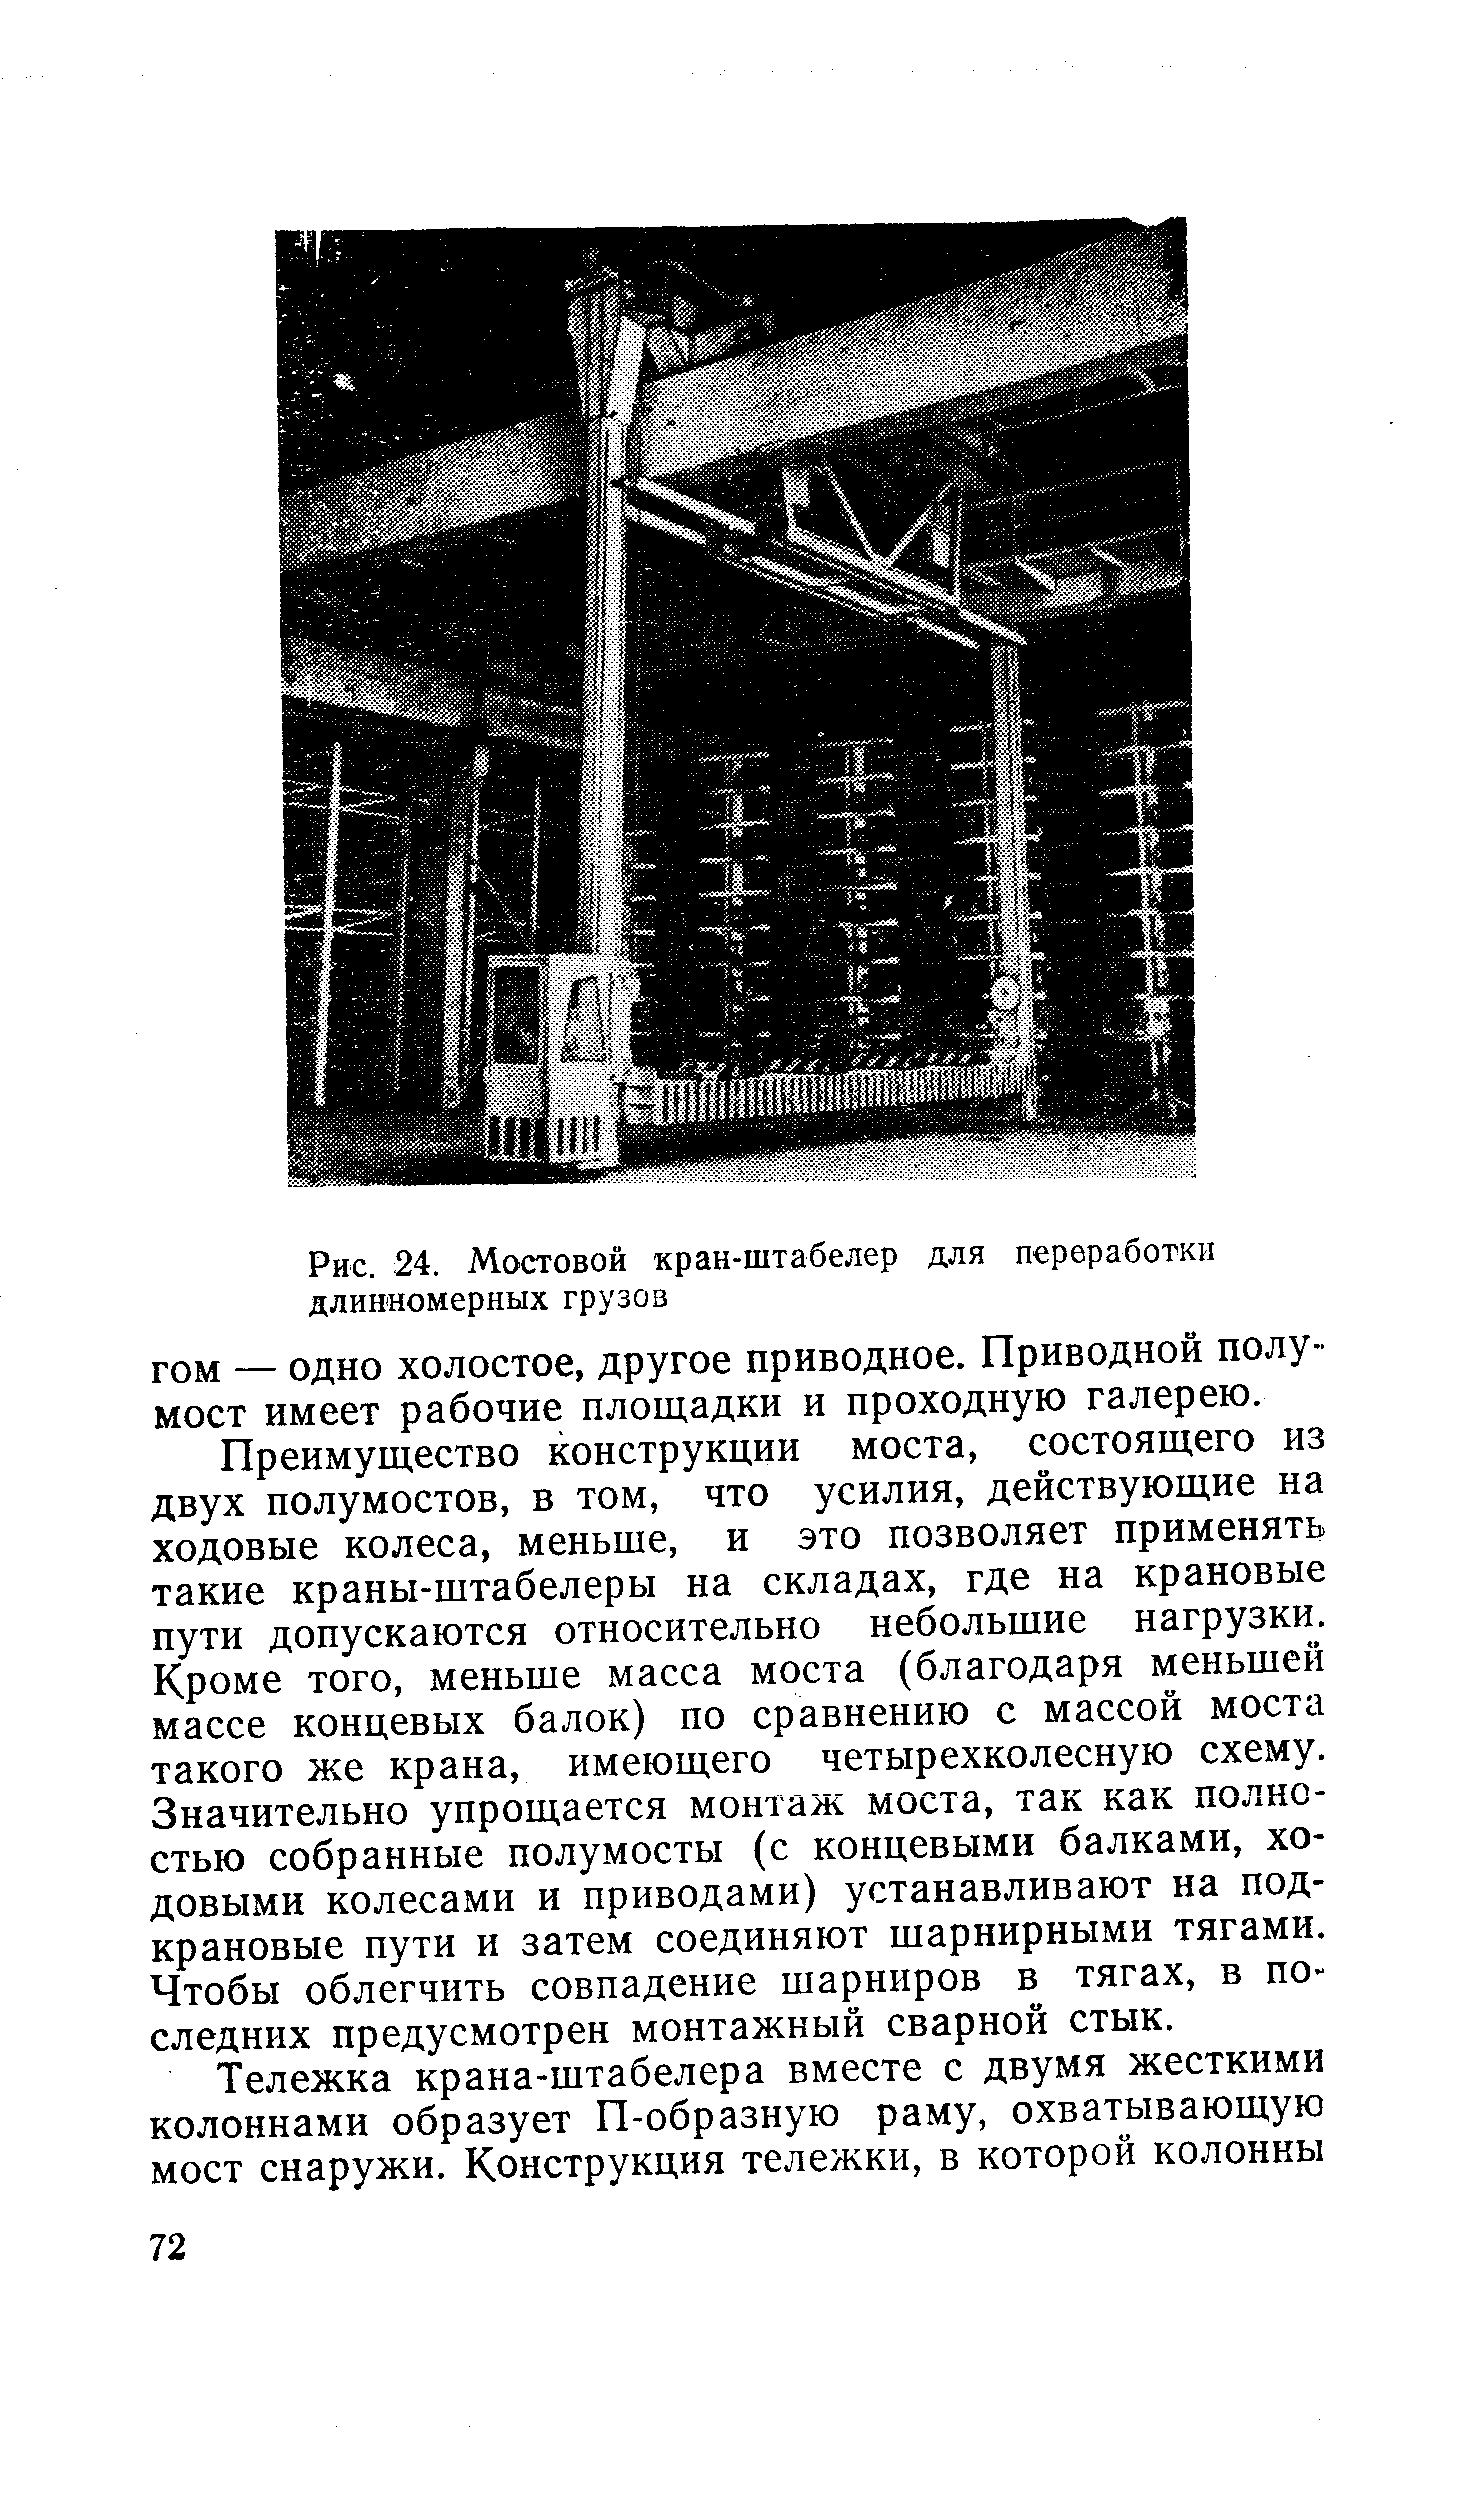 Рис. 24. Мостовой кран-штабелер для переработки длинномерных грузов
